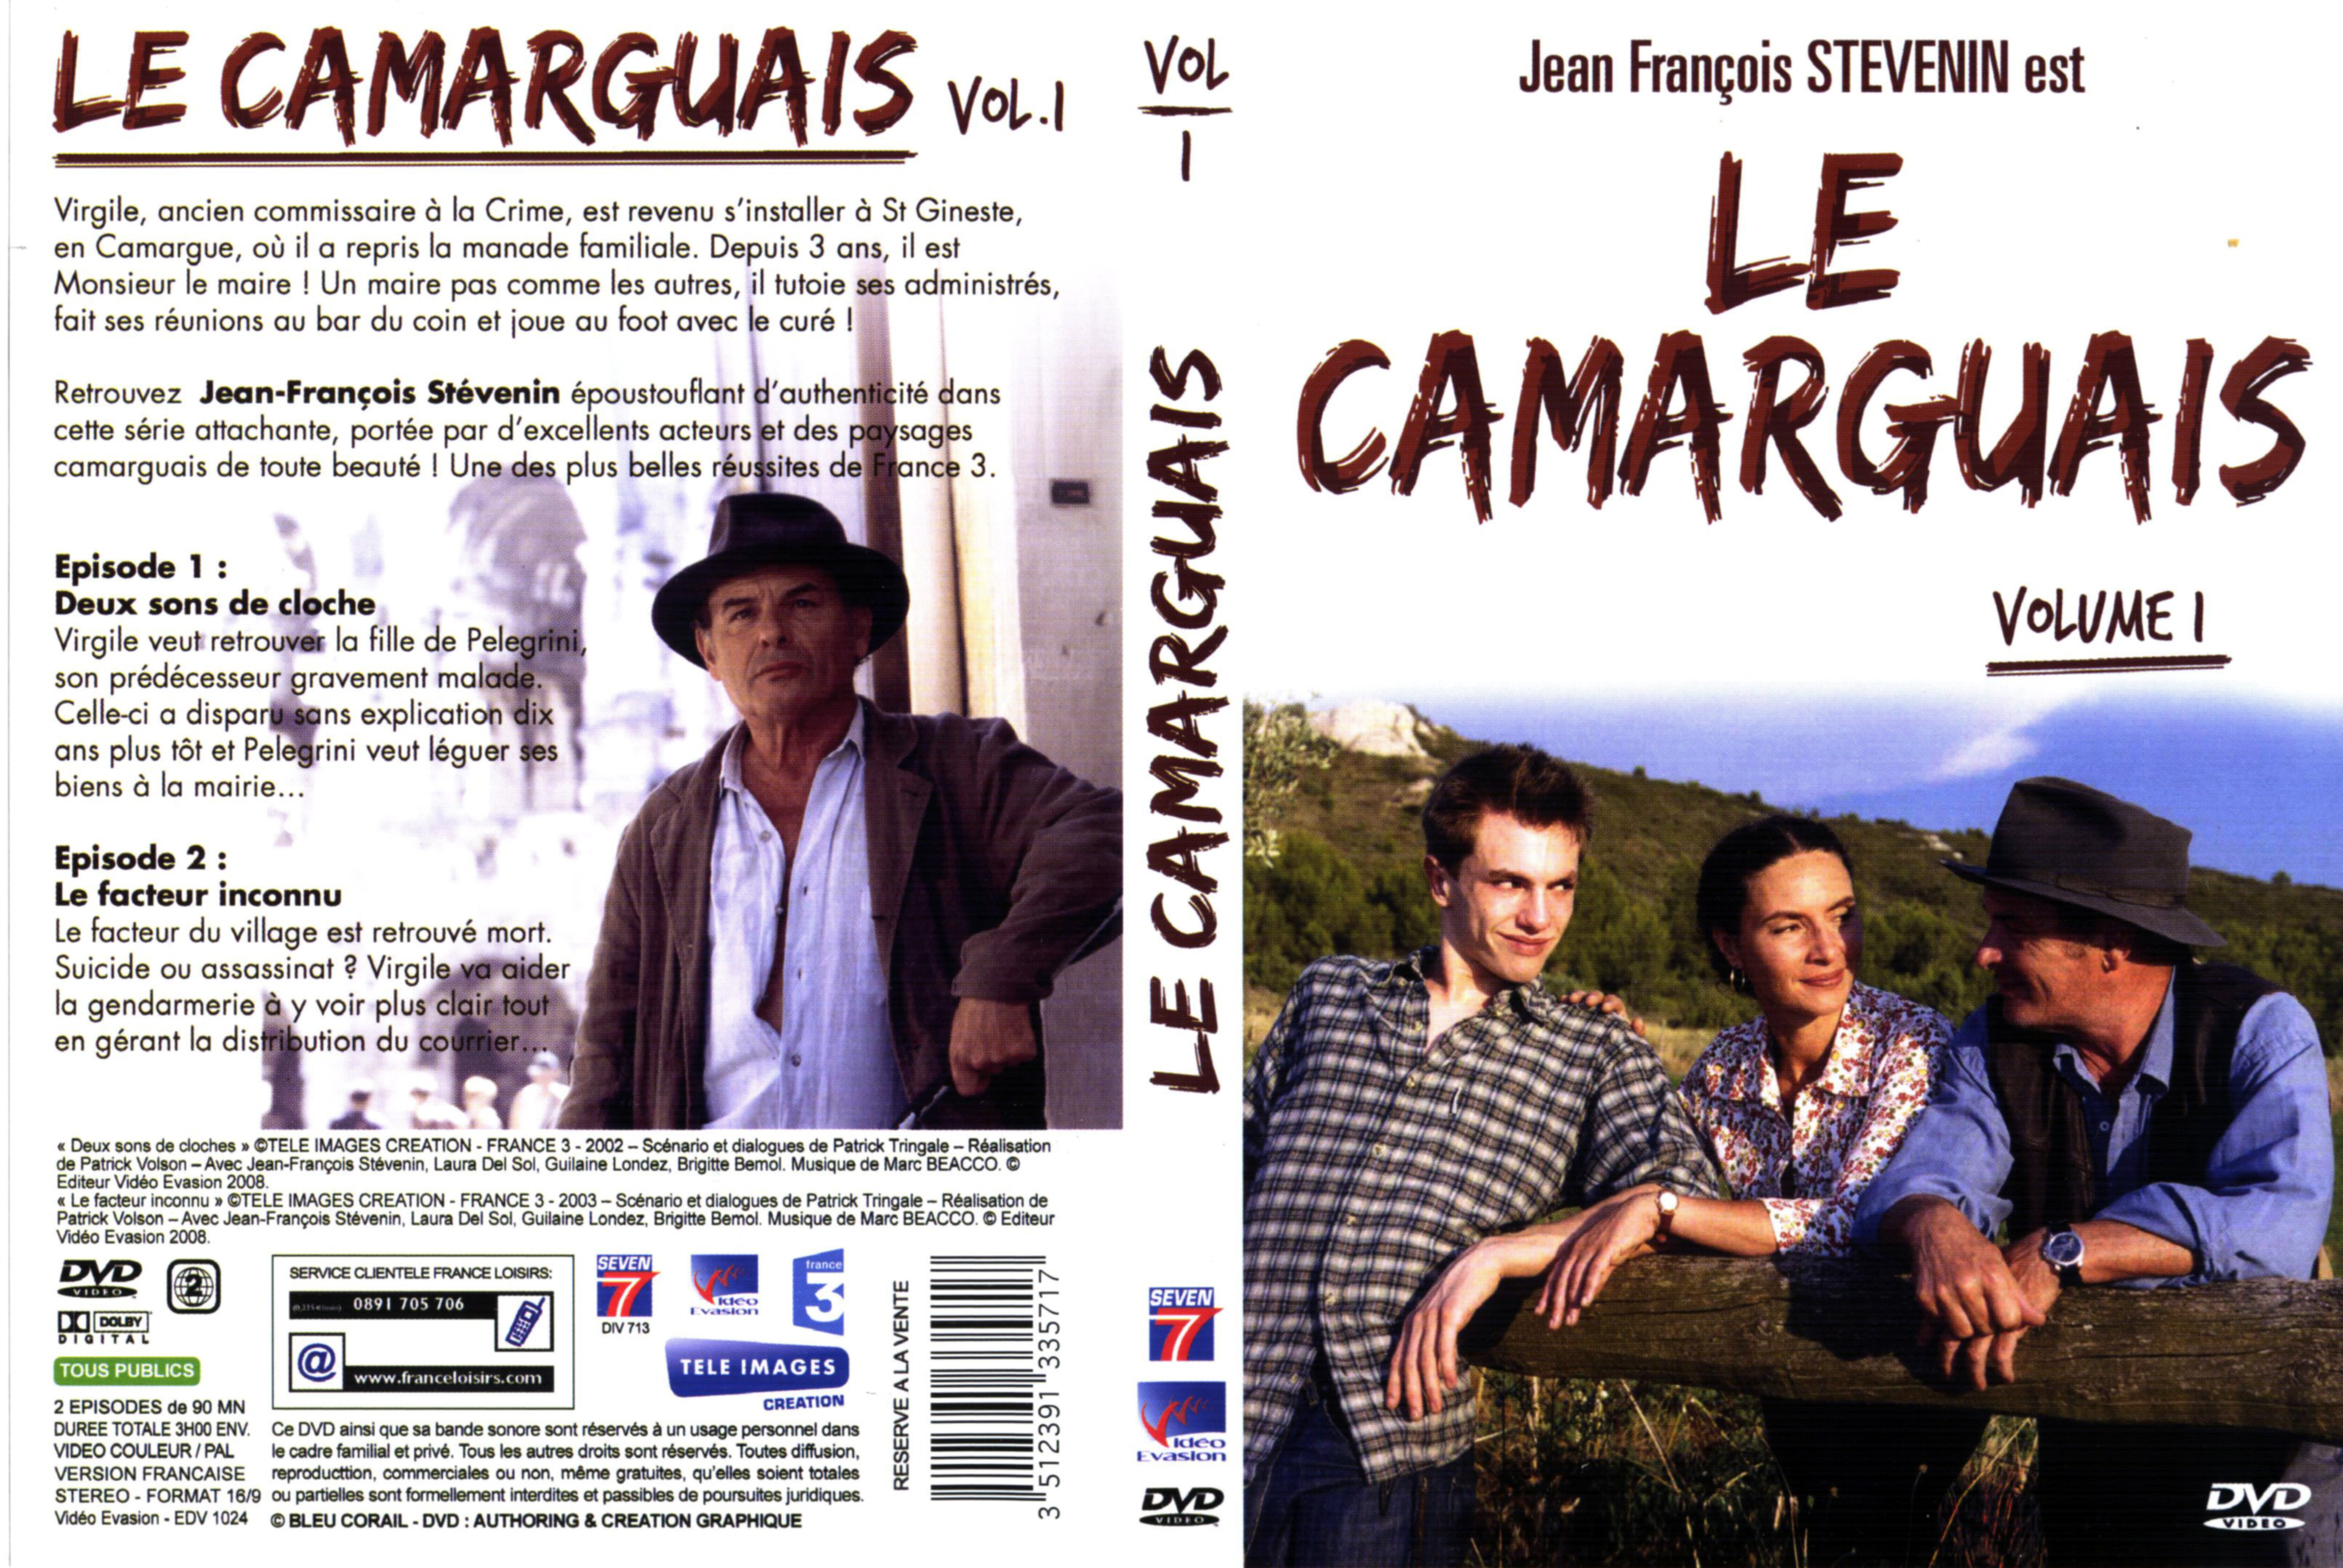 Jaquette DVD Le camarguais vol 1